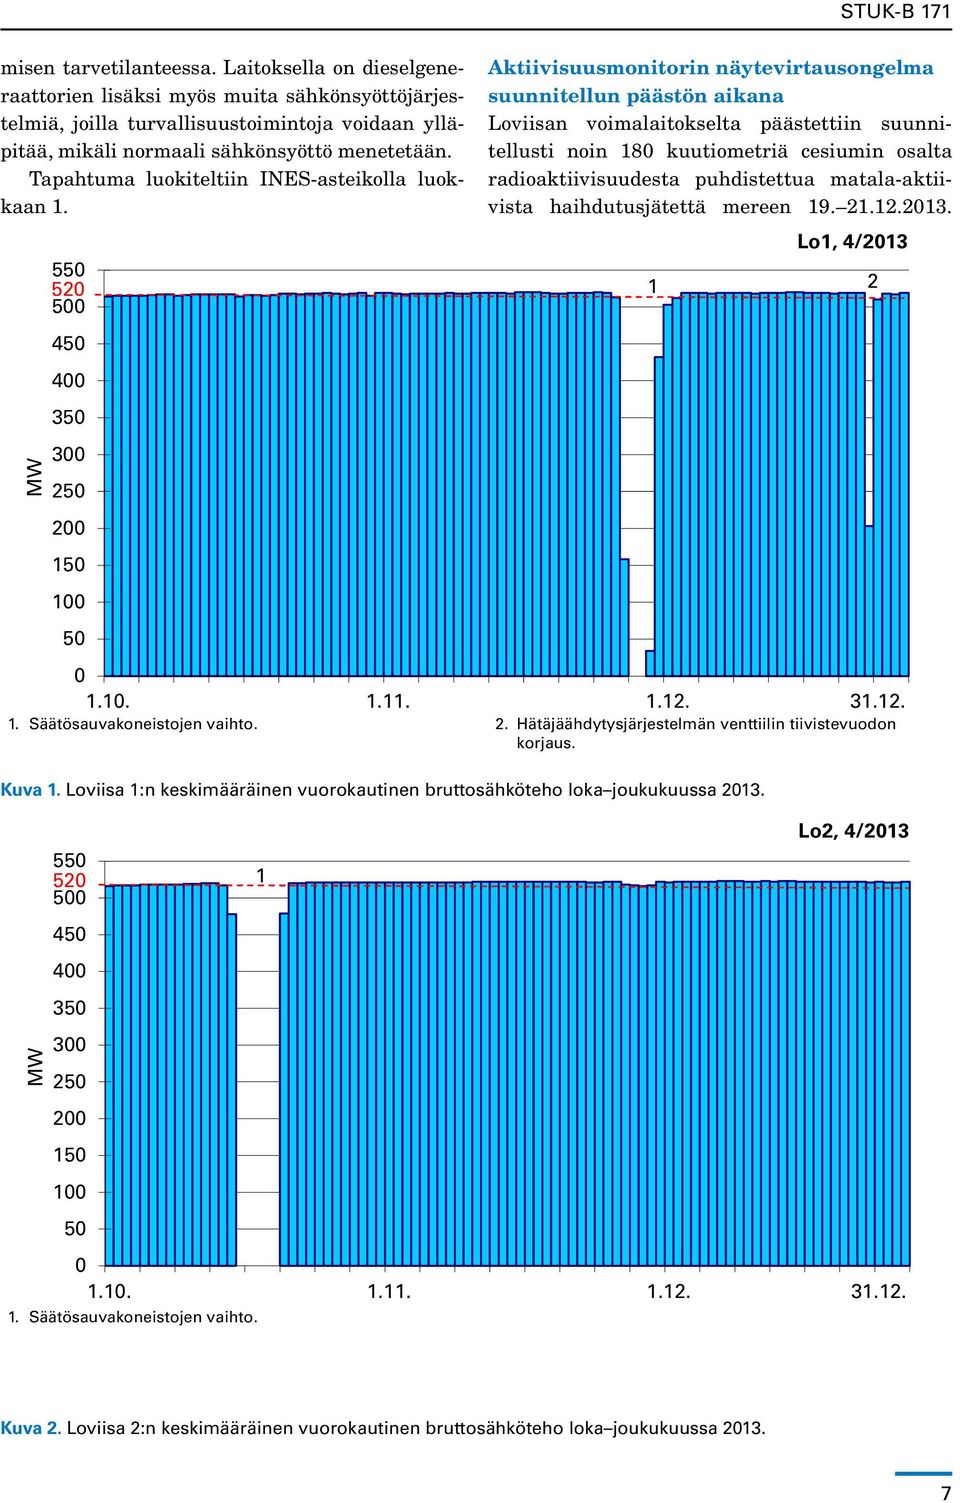 Loviisa 1:n keskimääräinen vuorokautinen bruttosähköteho loka joukukuussa 2013. MW 550 520 1 500 450 400 350 300 250 200 150 100 50 Lo2, 4/2013 0 1.10. 1.11. 1.12. 31.12. 1. Säätösauvakoneistojen vaihto.